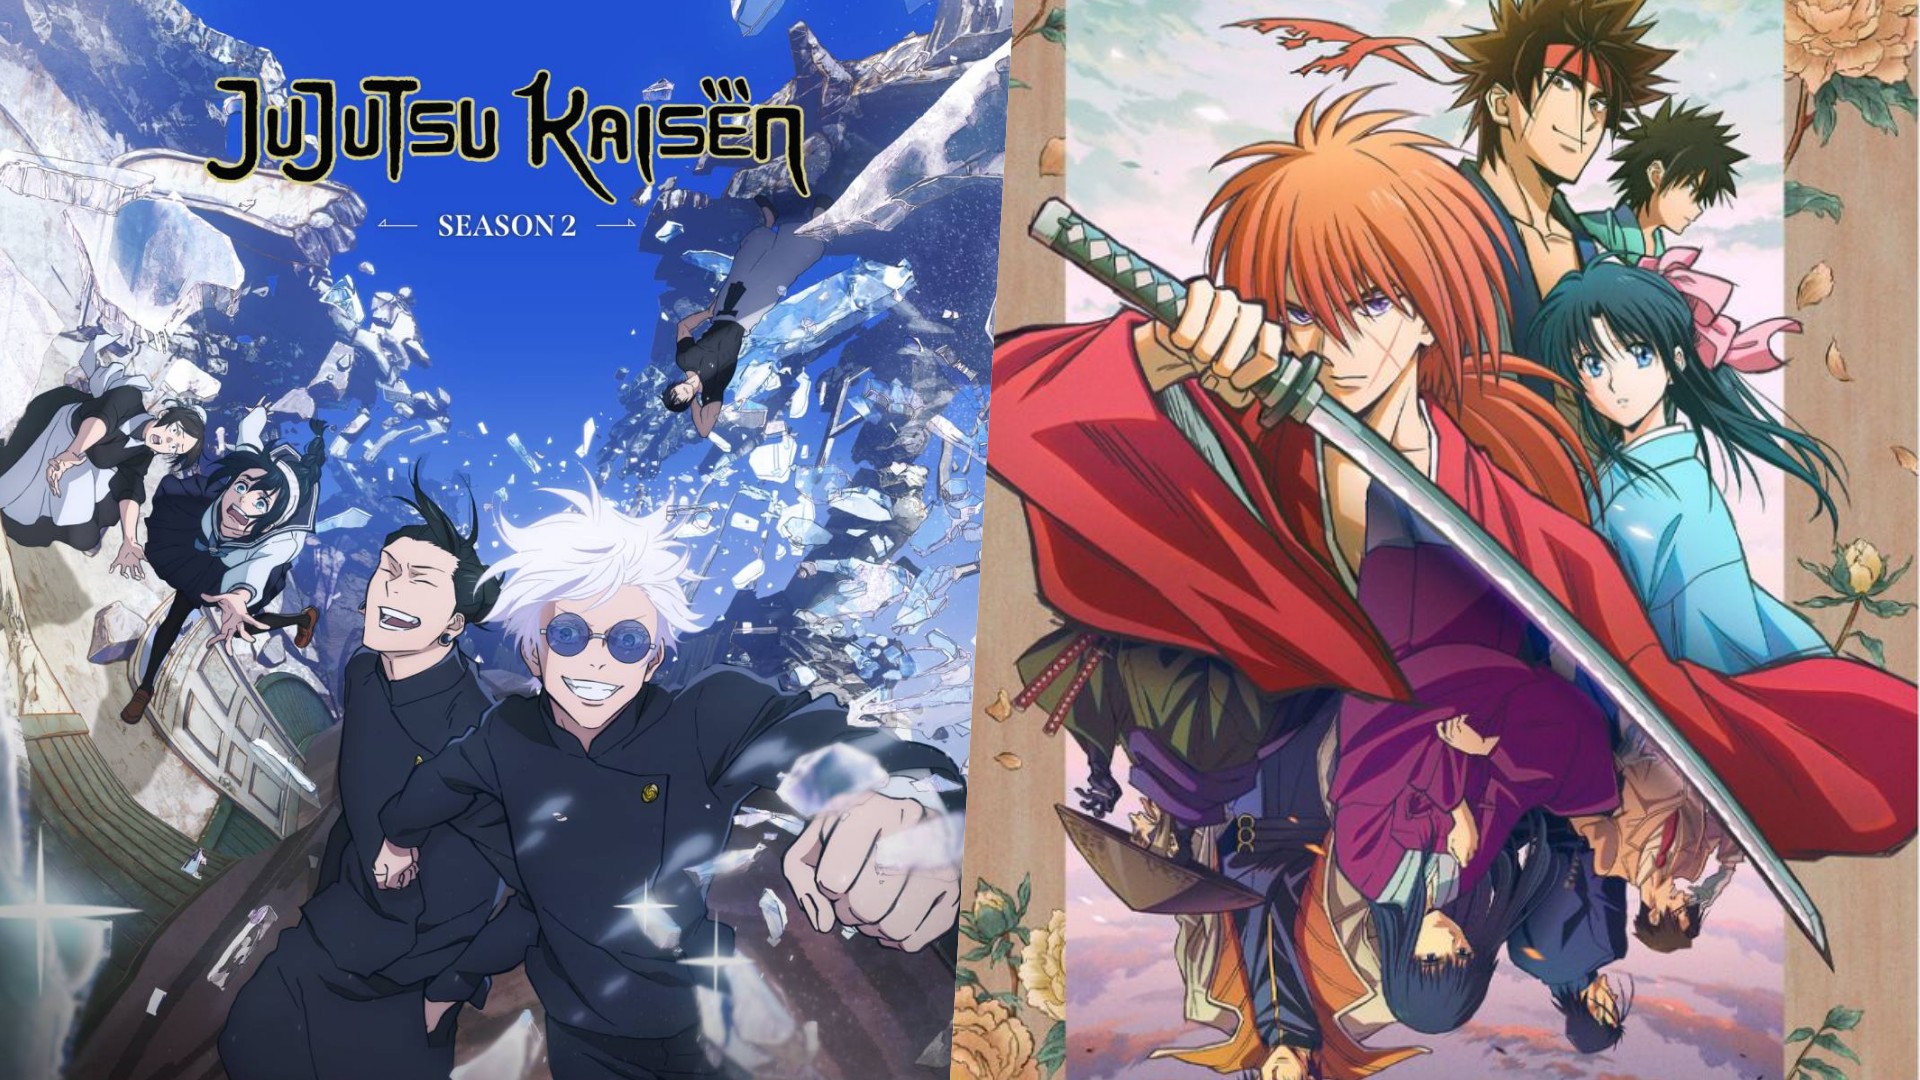 Jujutsu Kaisen Season 2, Rurouni Kenshin coming to Prime video - GadgetMatch